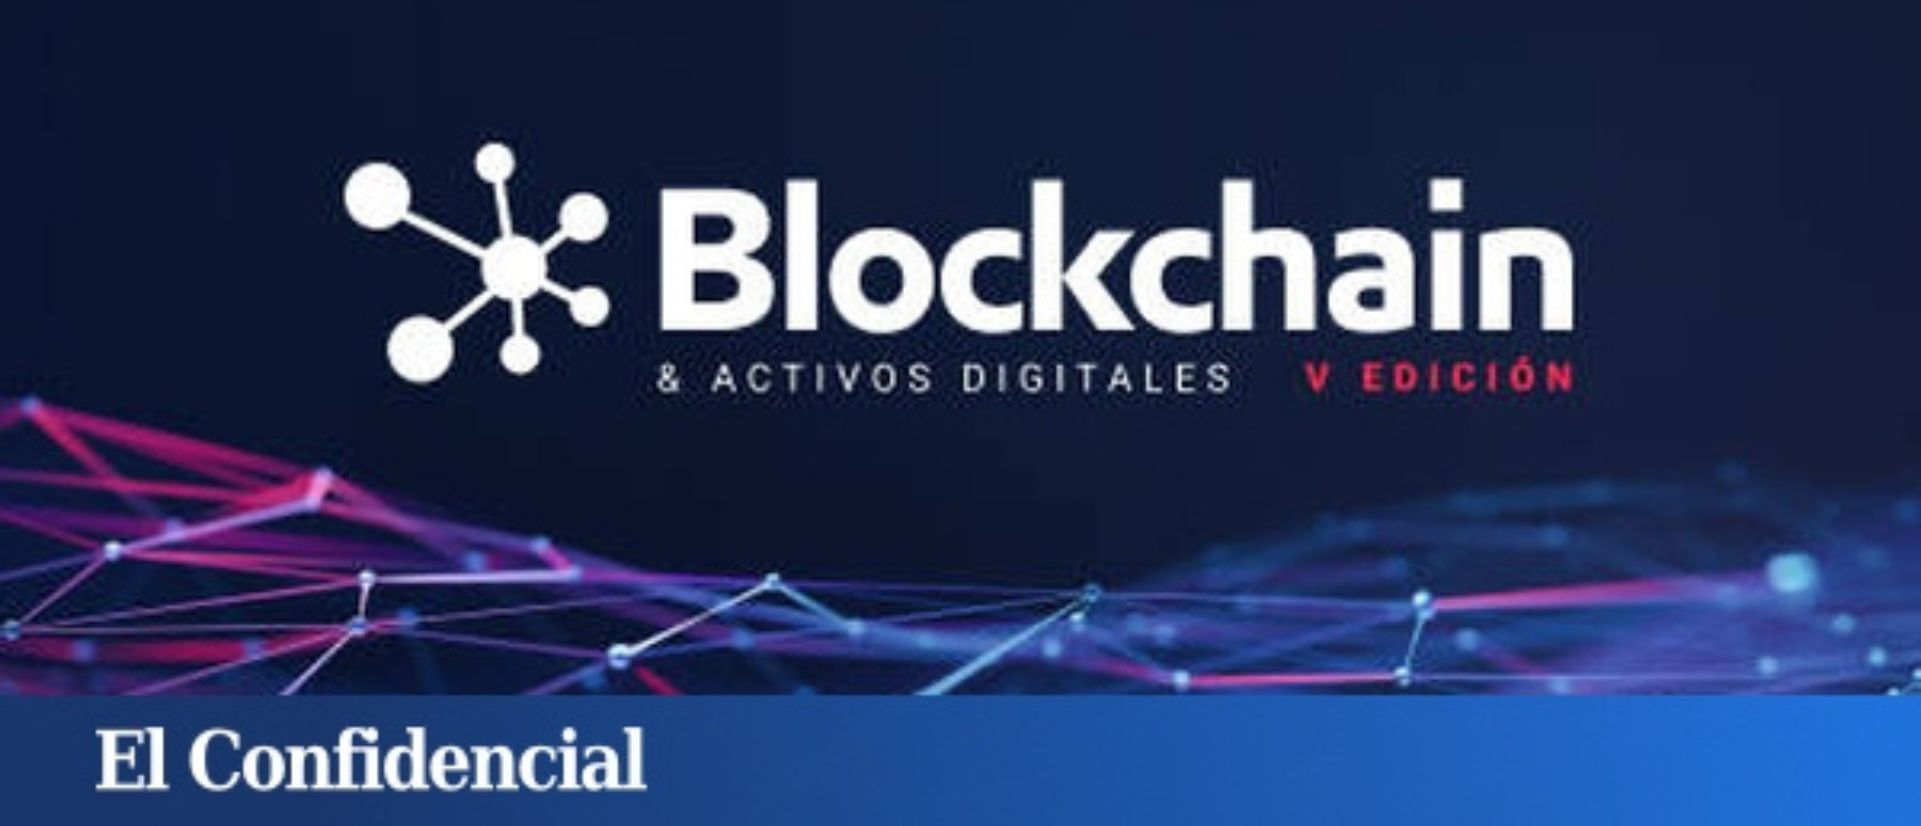 El Confidencial Blockchain Forum